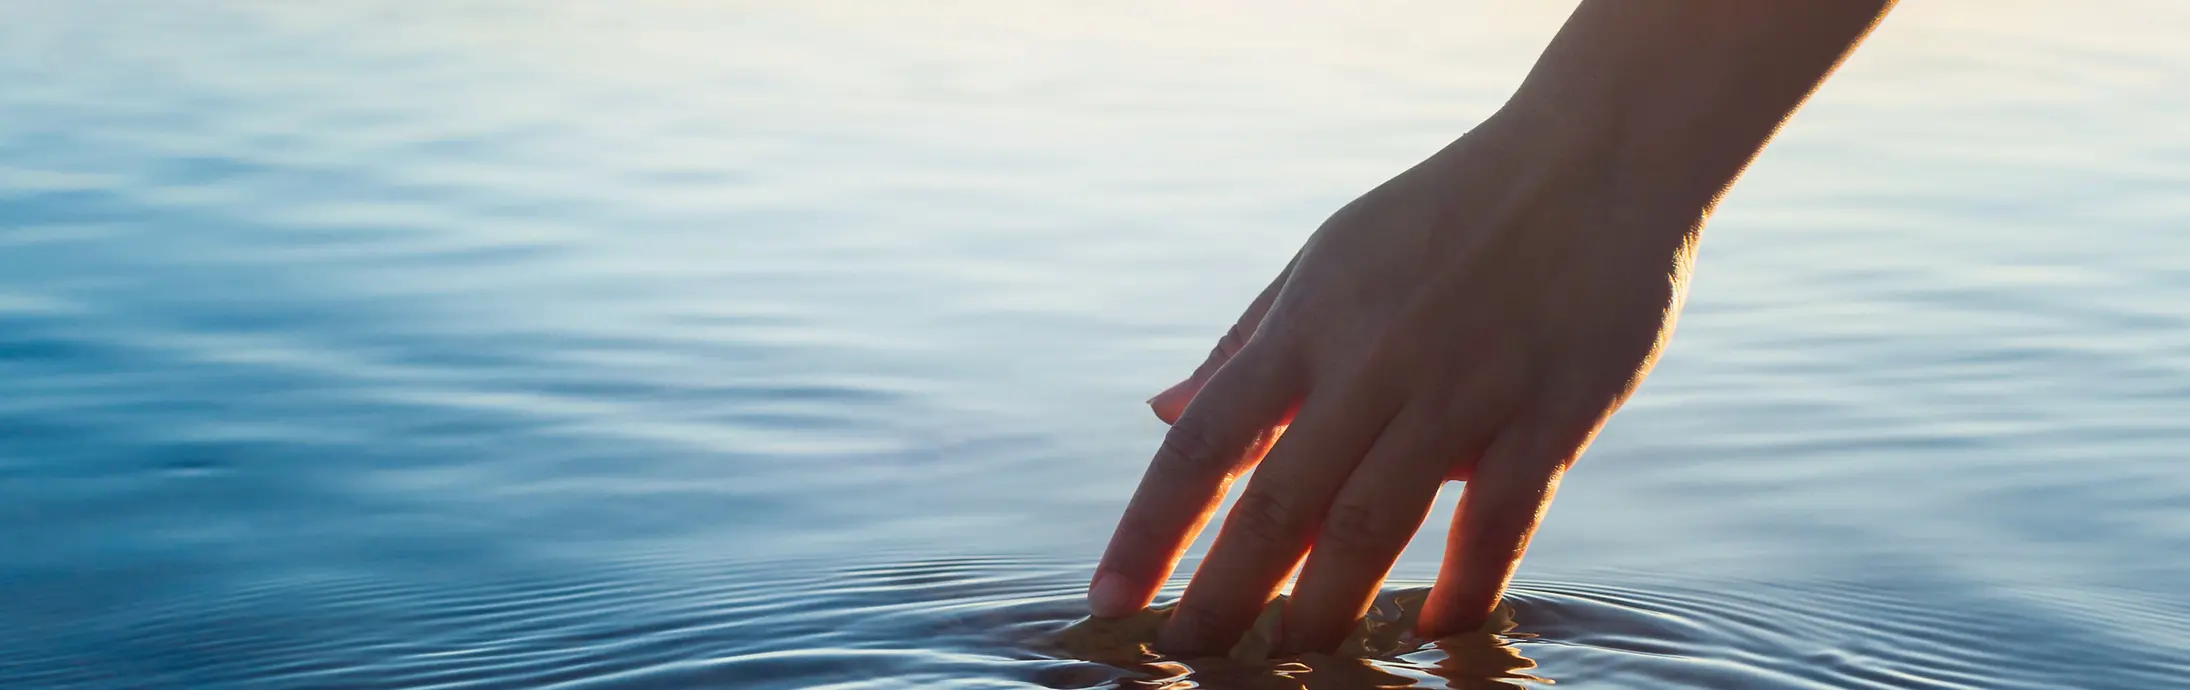 Eine Hand streicht durch eine ruhige Wasserfläche vor dem Horizont